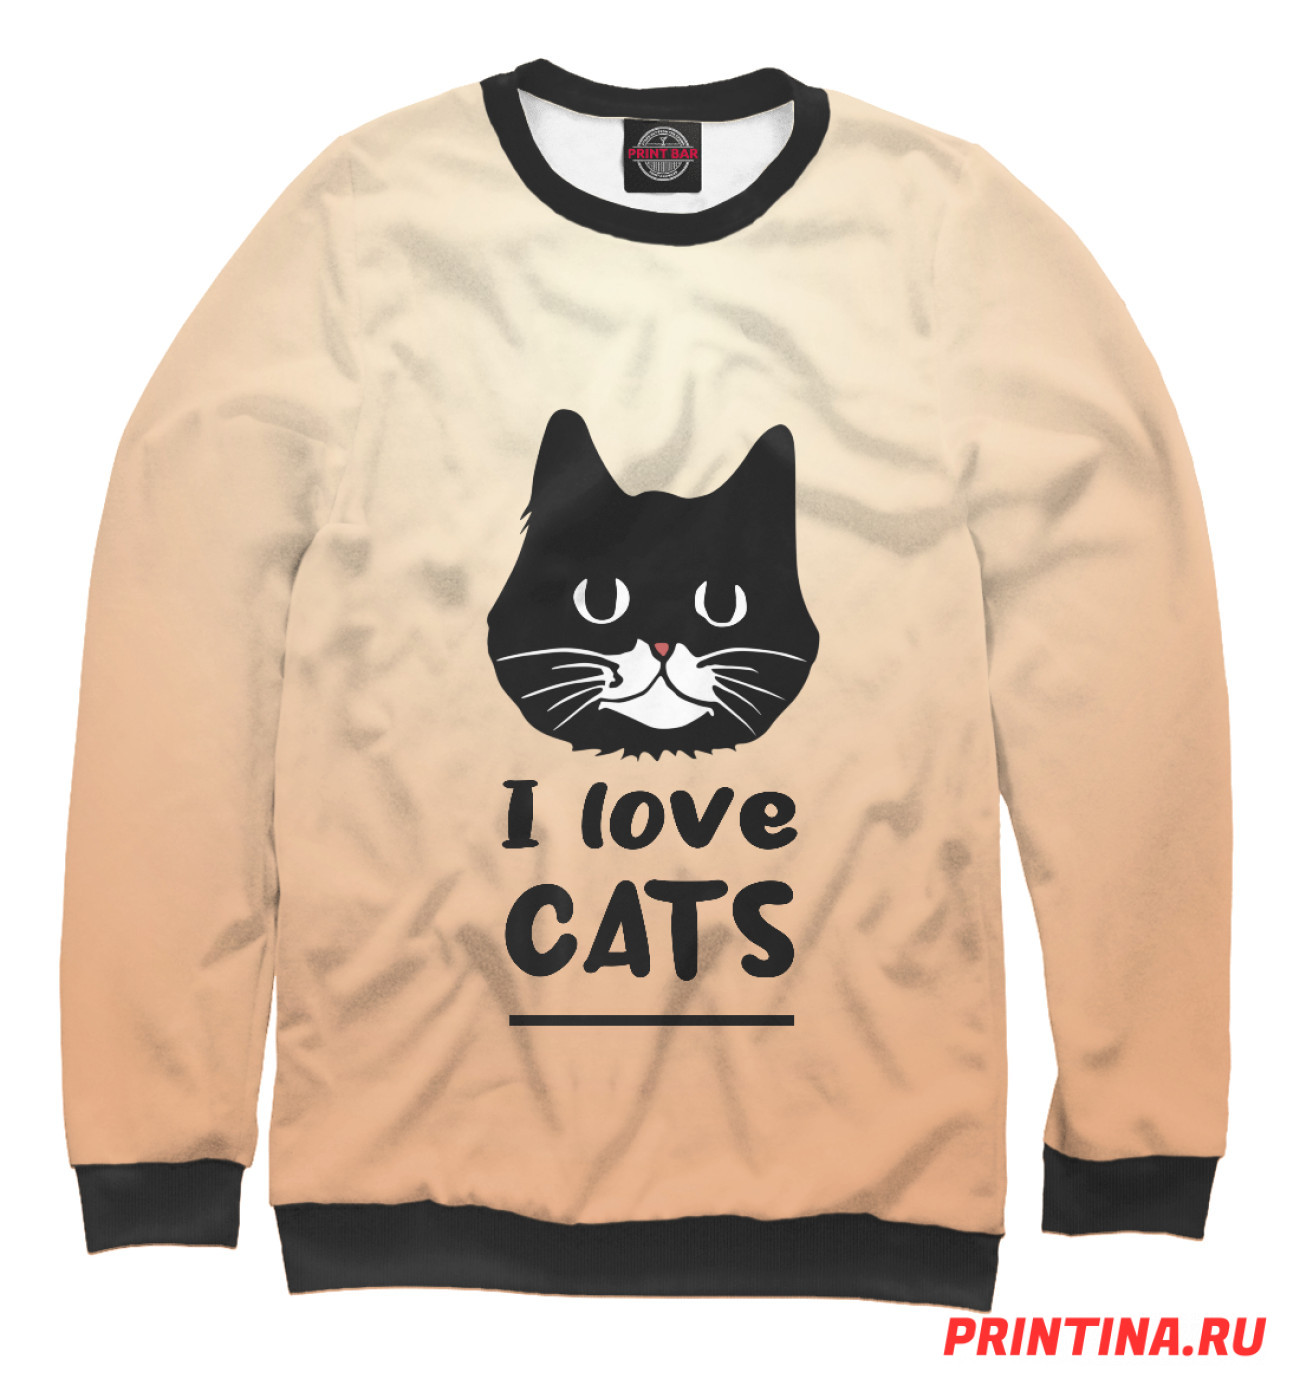 Мужской Свитшот I love Cats (градиент), артикул: CAT-173141-swi-2